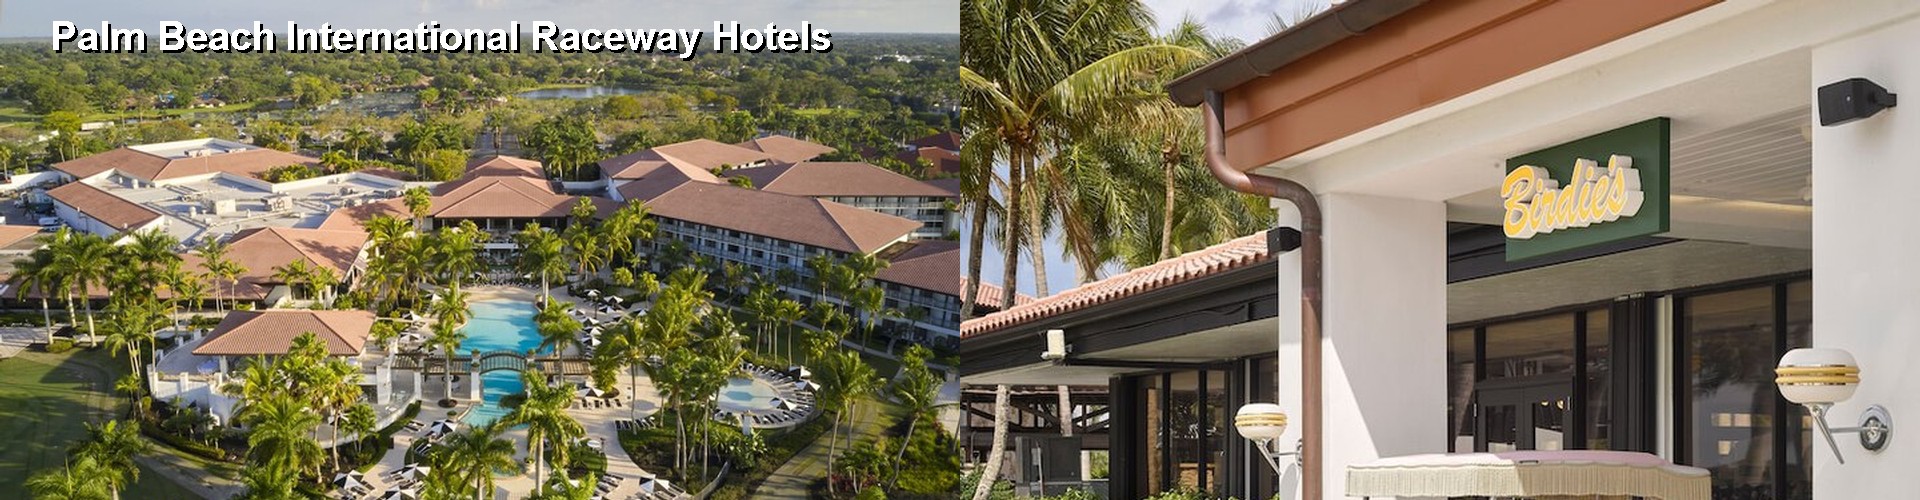 5 Best Hotels near Palm Beach International Raceway